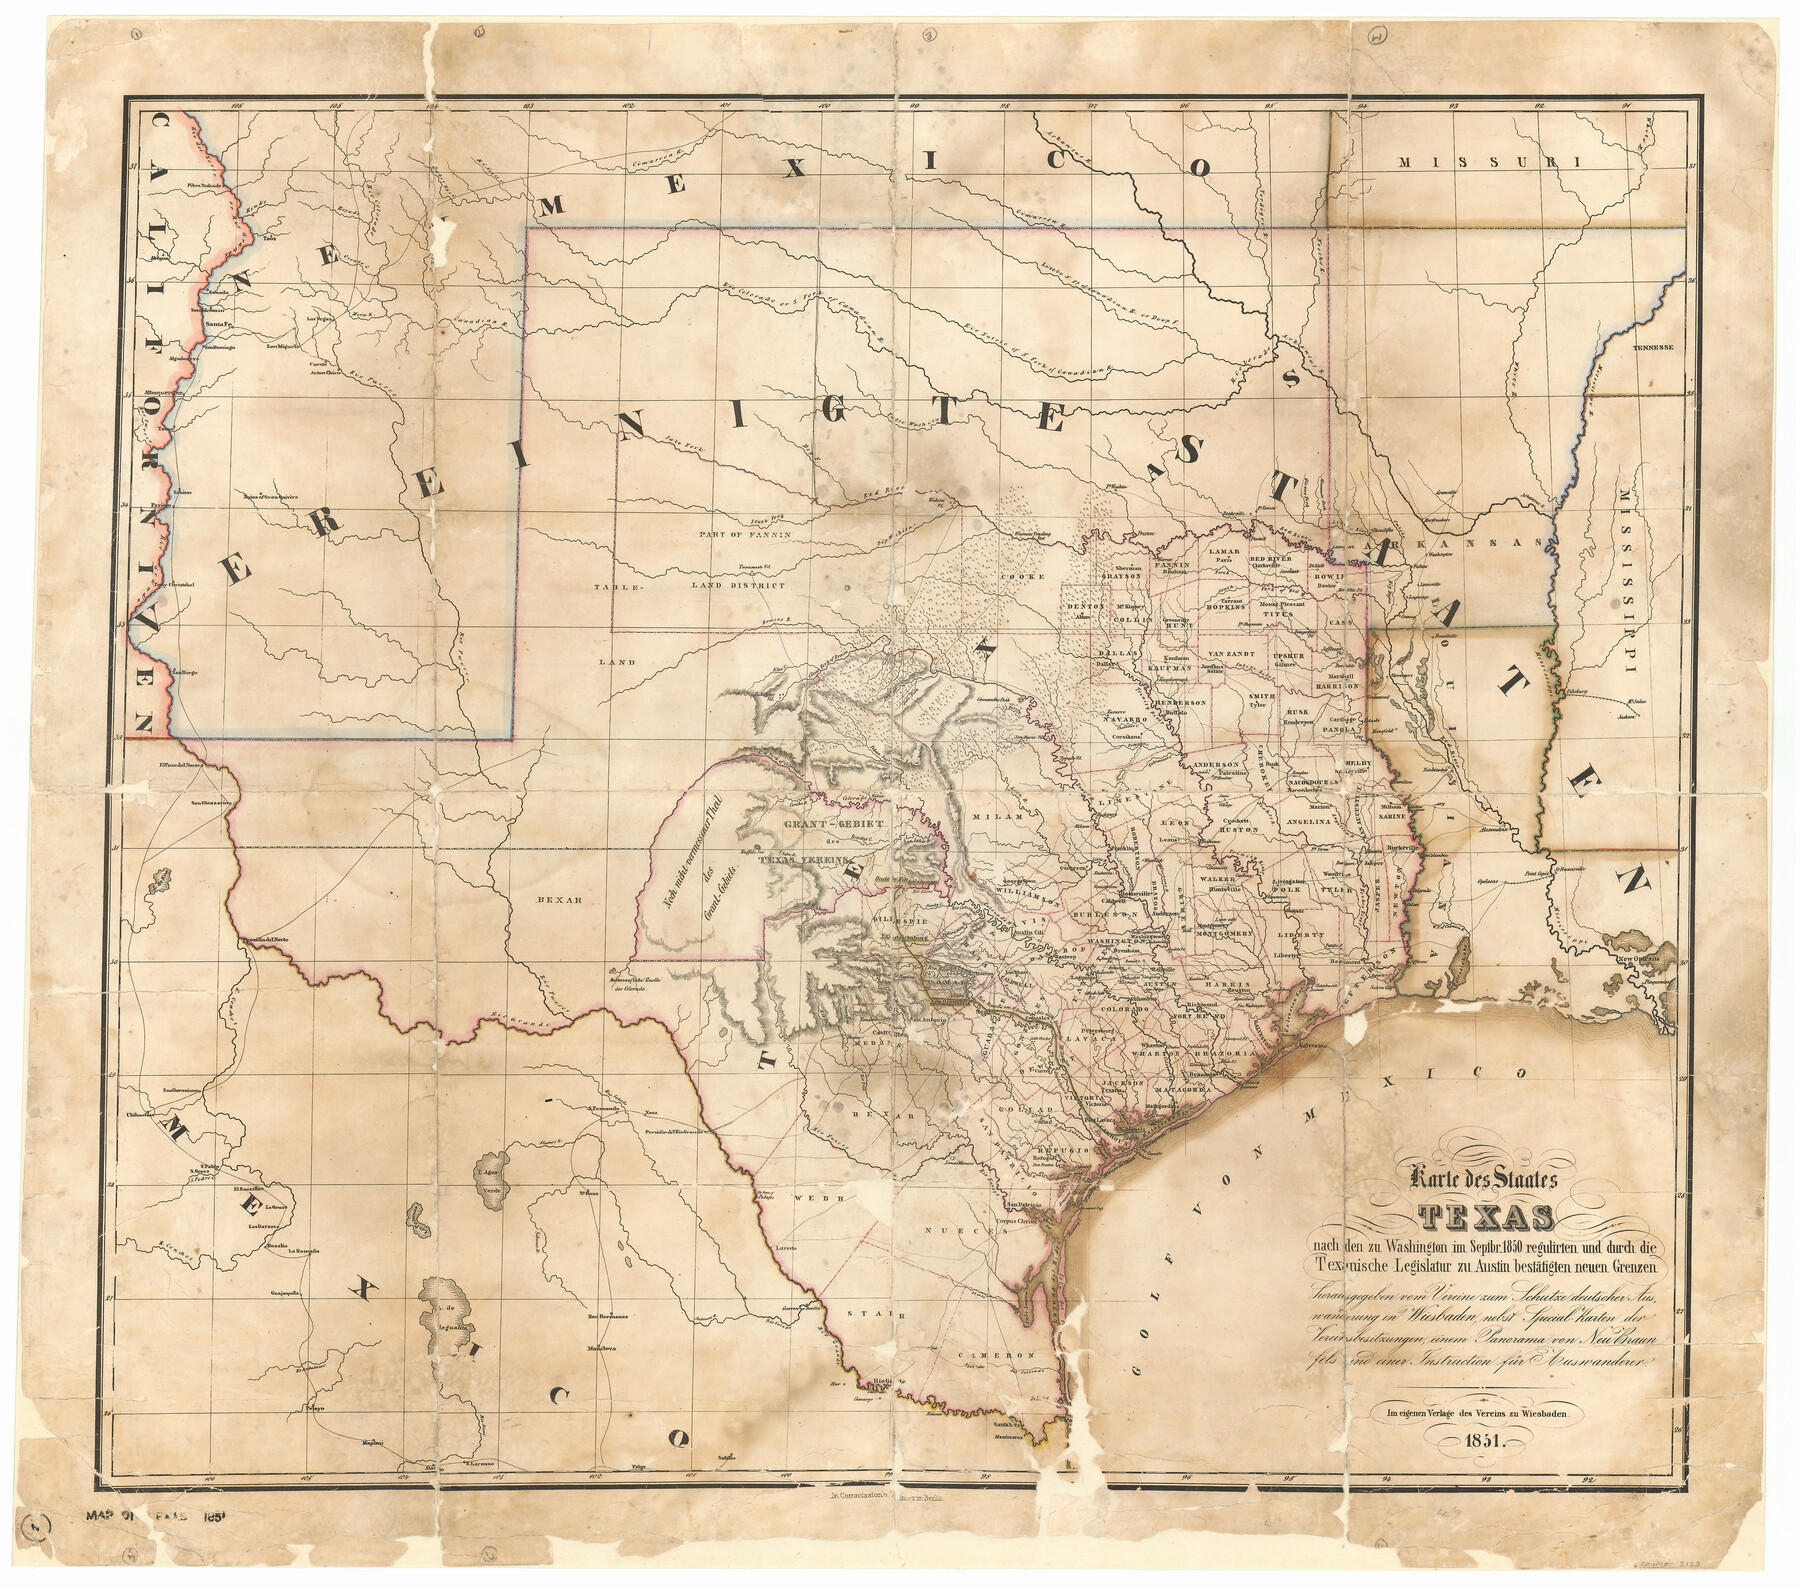 Karte des Staates, Texas